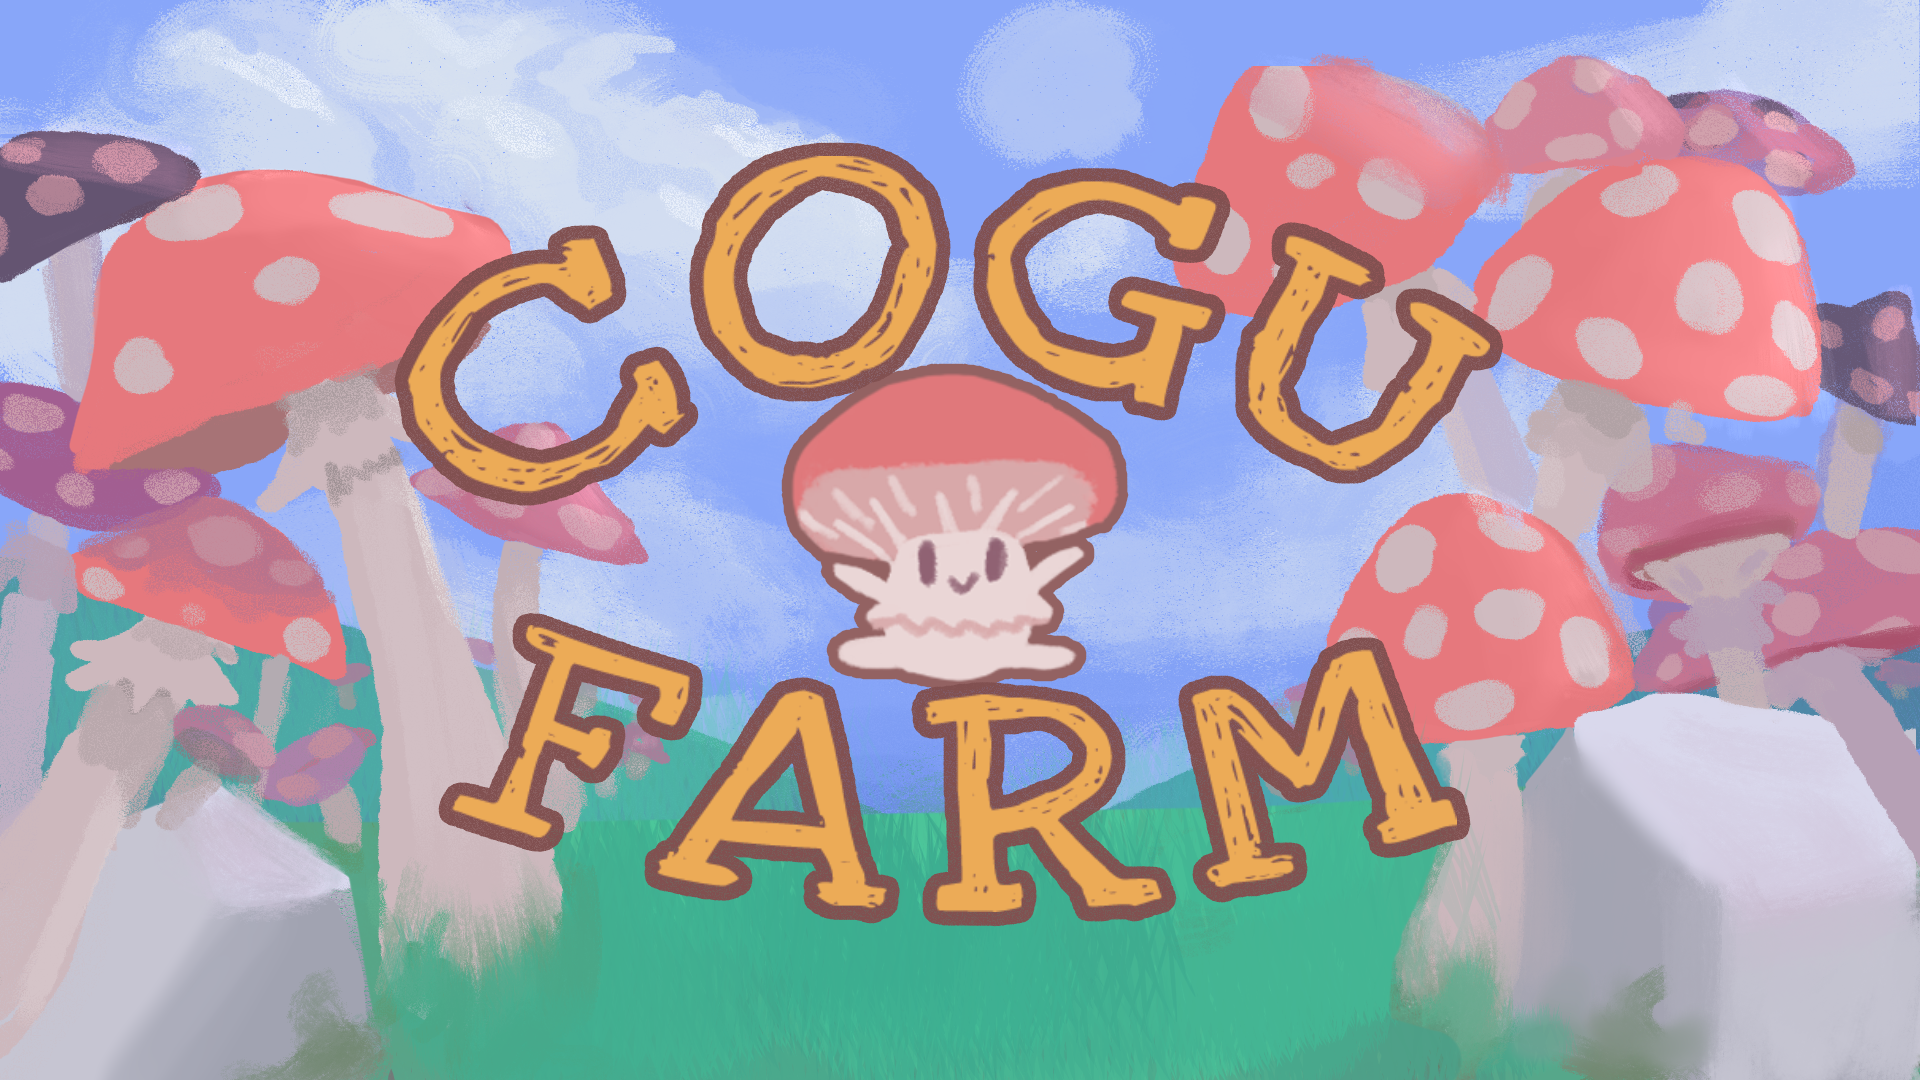 Cogu Farm